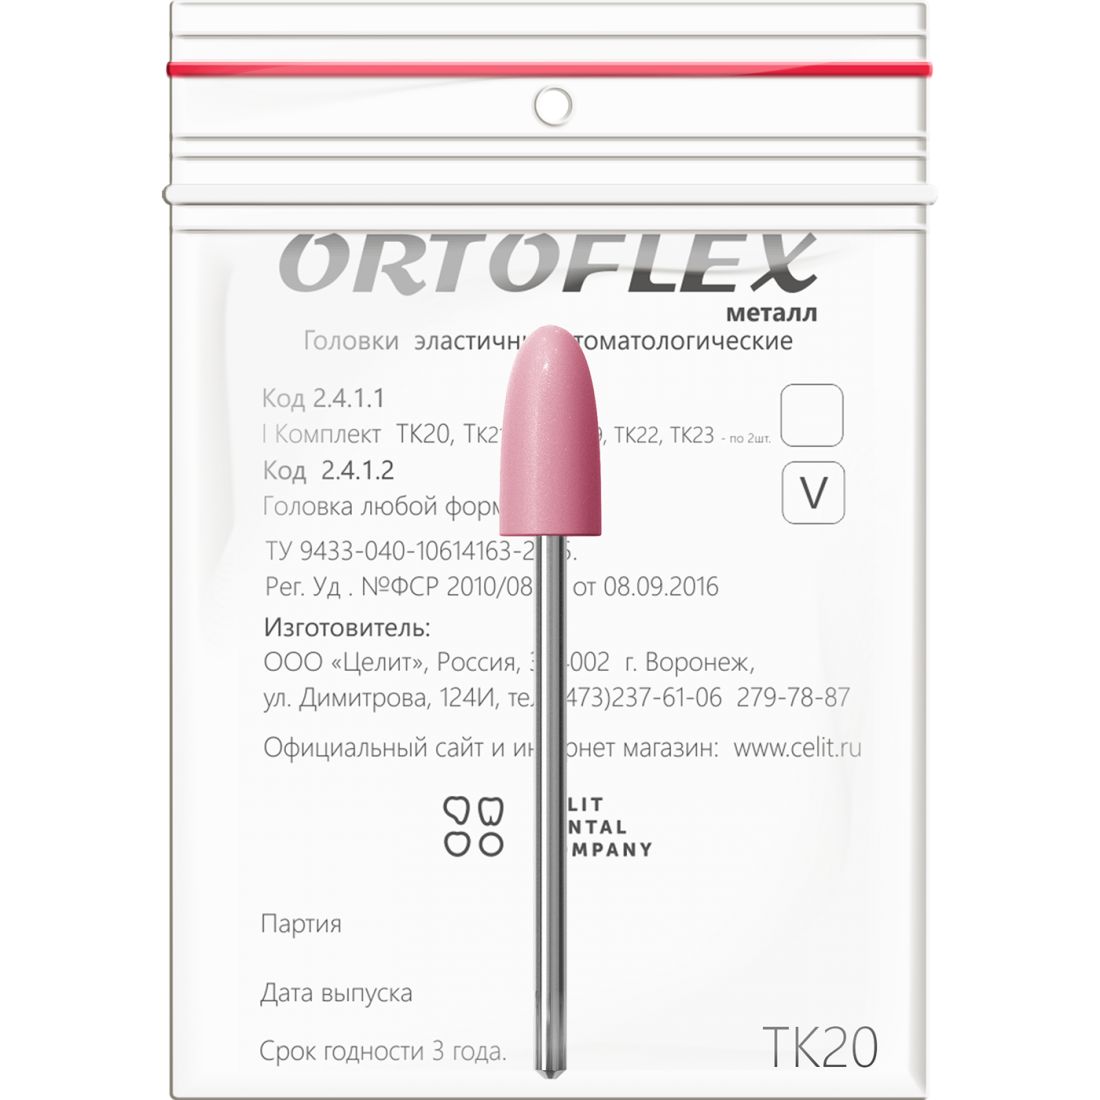 Ortoflex металл ТК20, головки Ортофлекс для обработки металла (1шт)